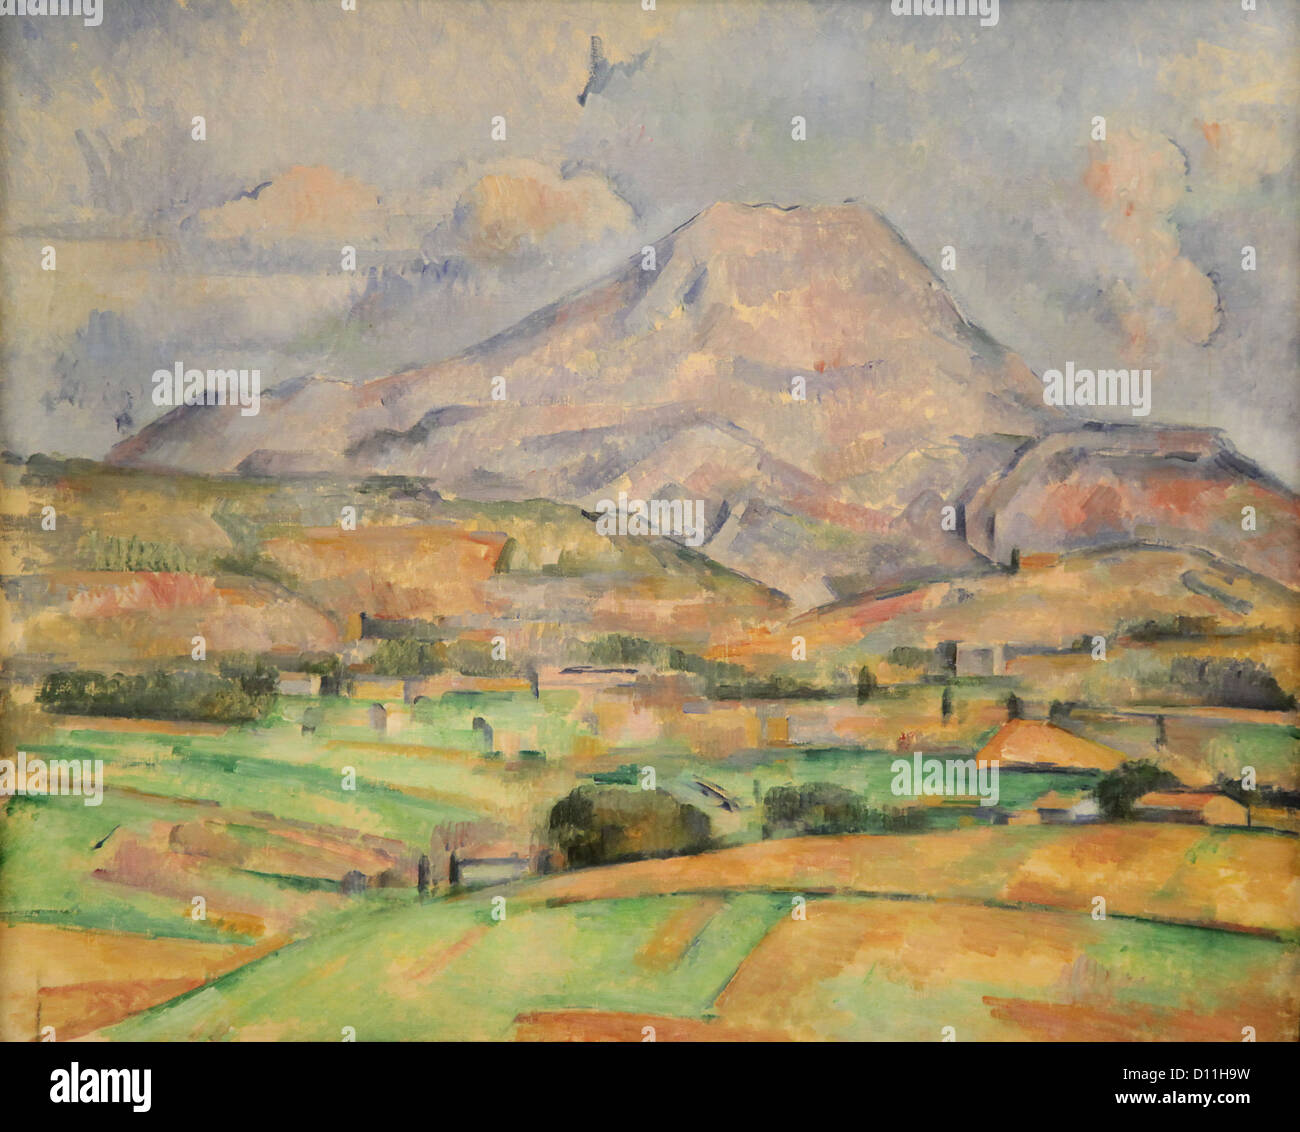 La montagne Sainte-Victoire (1888) von Paul Cézanne (1839-1906) französischer Maler nach dem Impressionismus Stockfoto